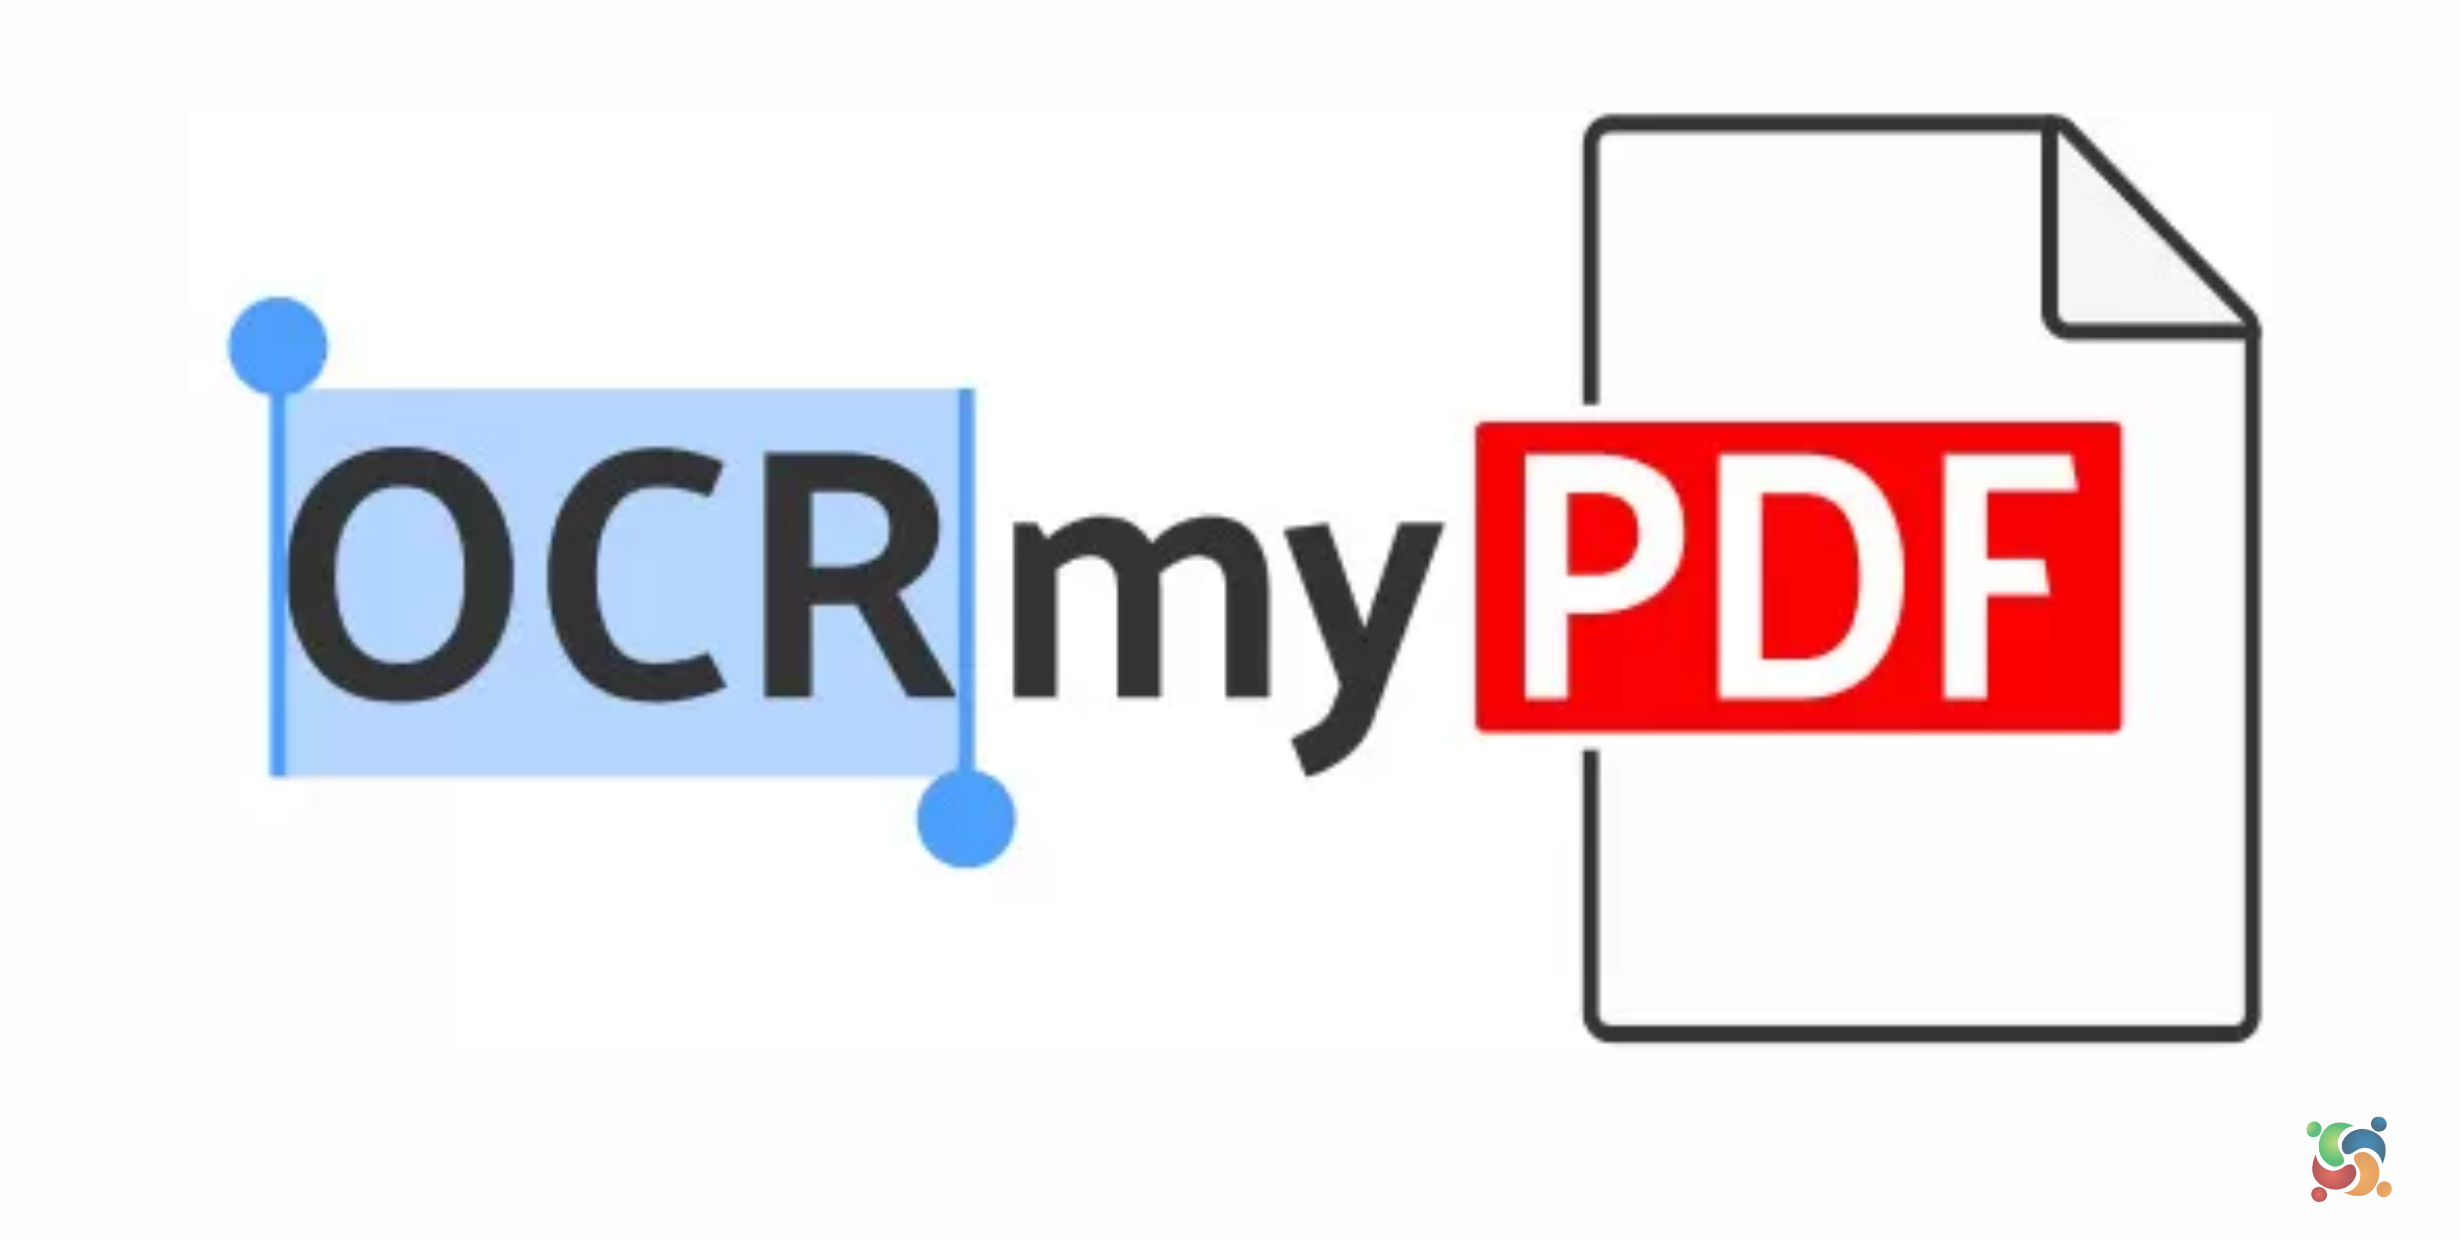 OCRmyPDF 15.0 lançado para reconhecimento óptico de caracteres de arquivos PDF